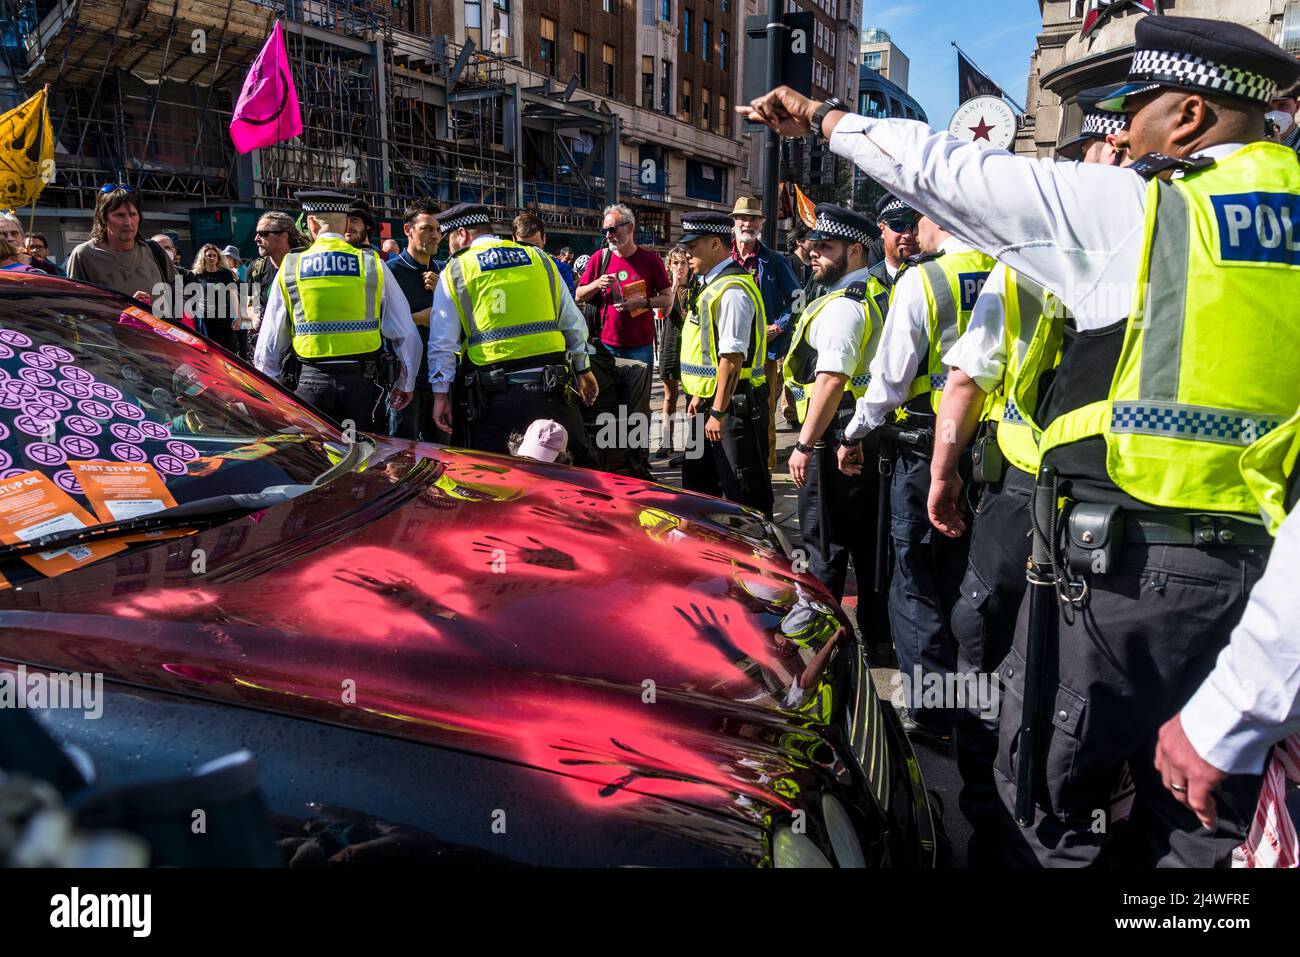 La polizia arriva all'auto bloccata con le impronte di vernice rossa a non saremo spettatori, una protesta della ribellione di estinzione che combatte per la giustizia climatica, Foto Stock